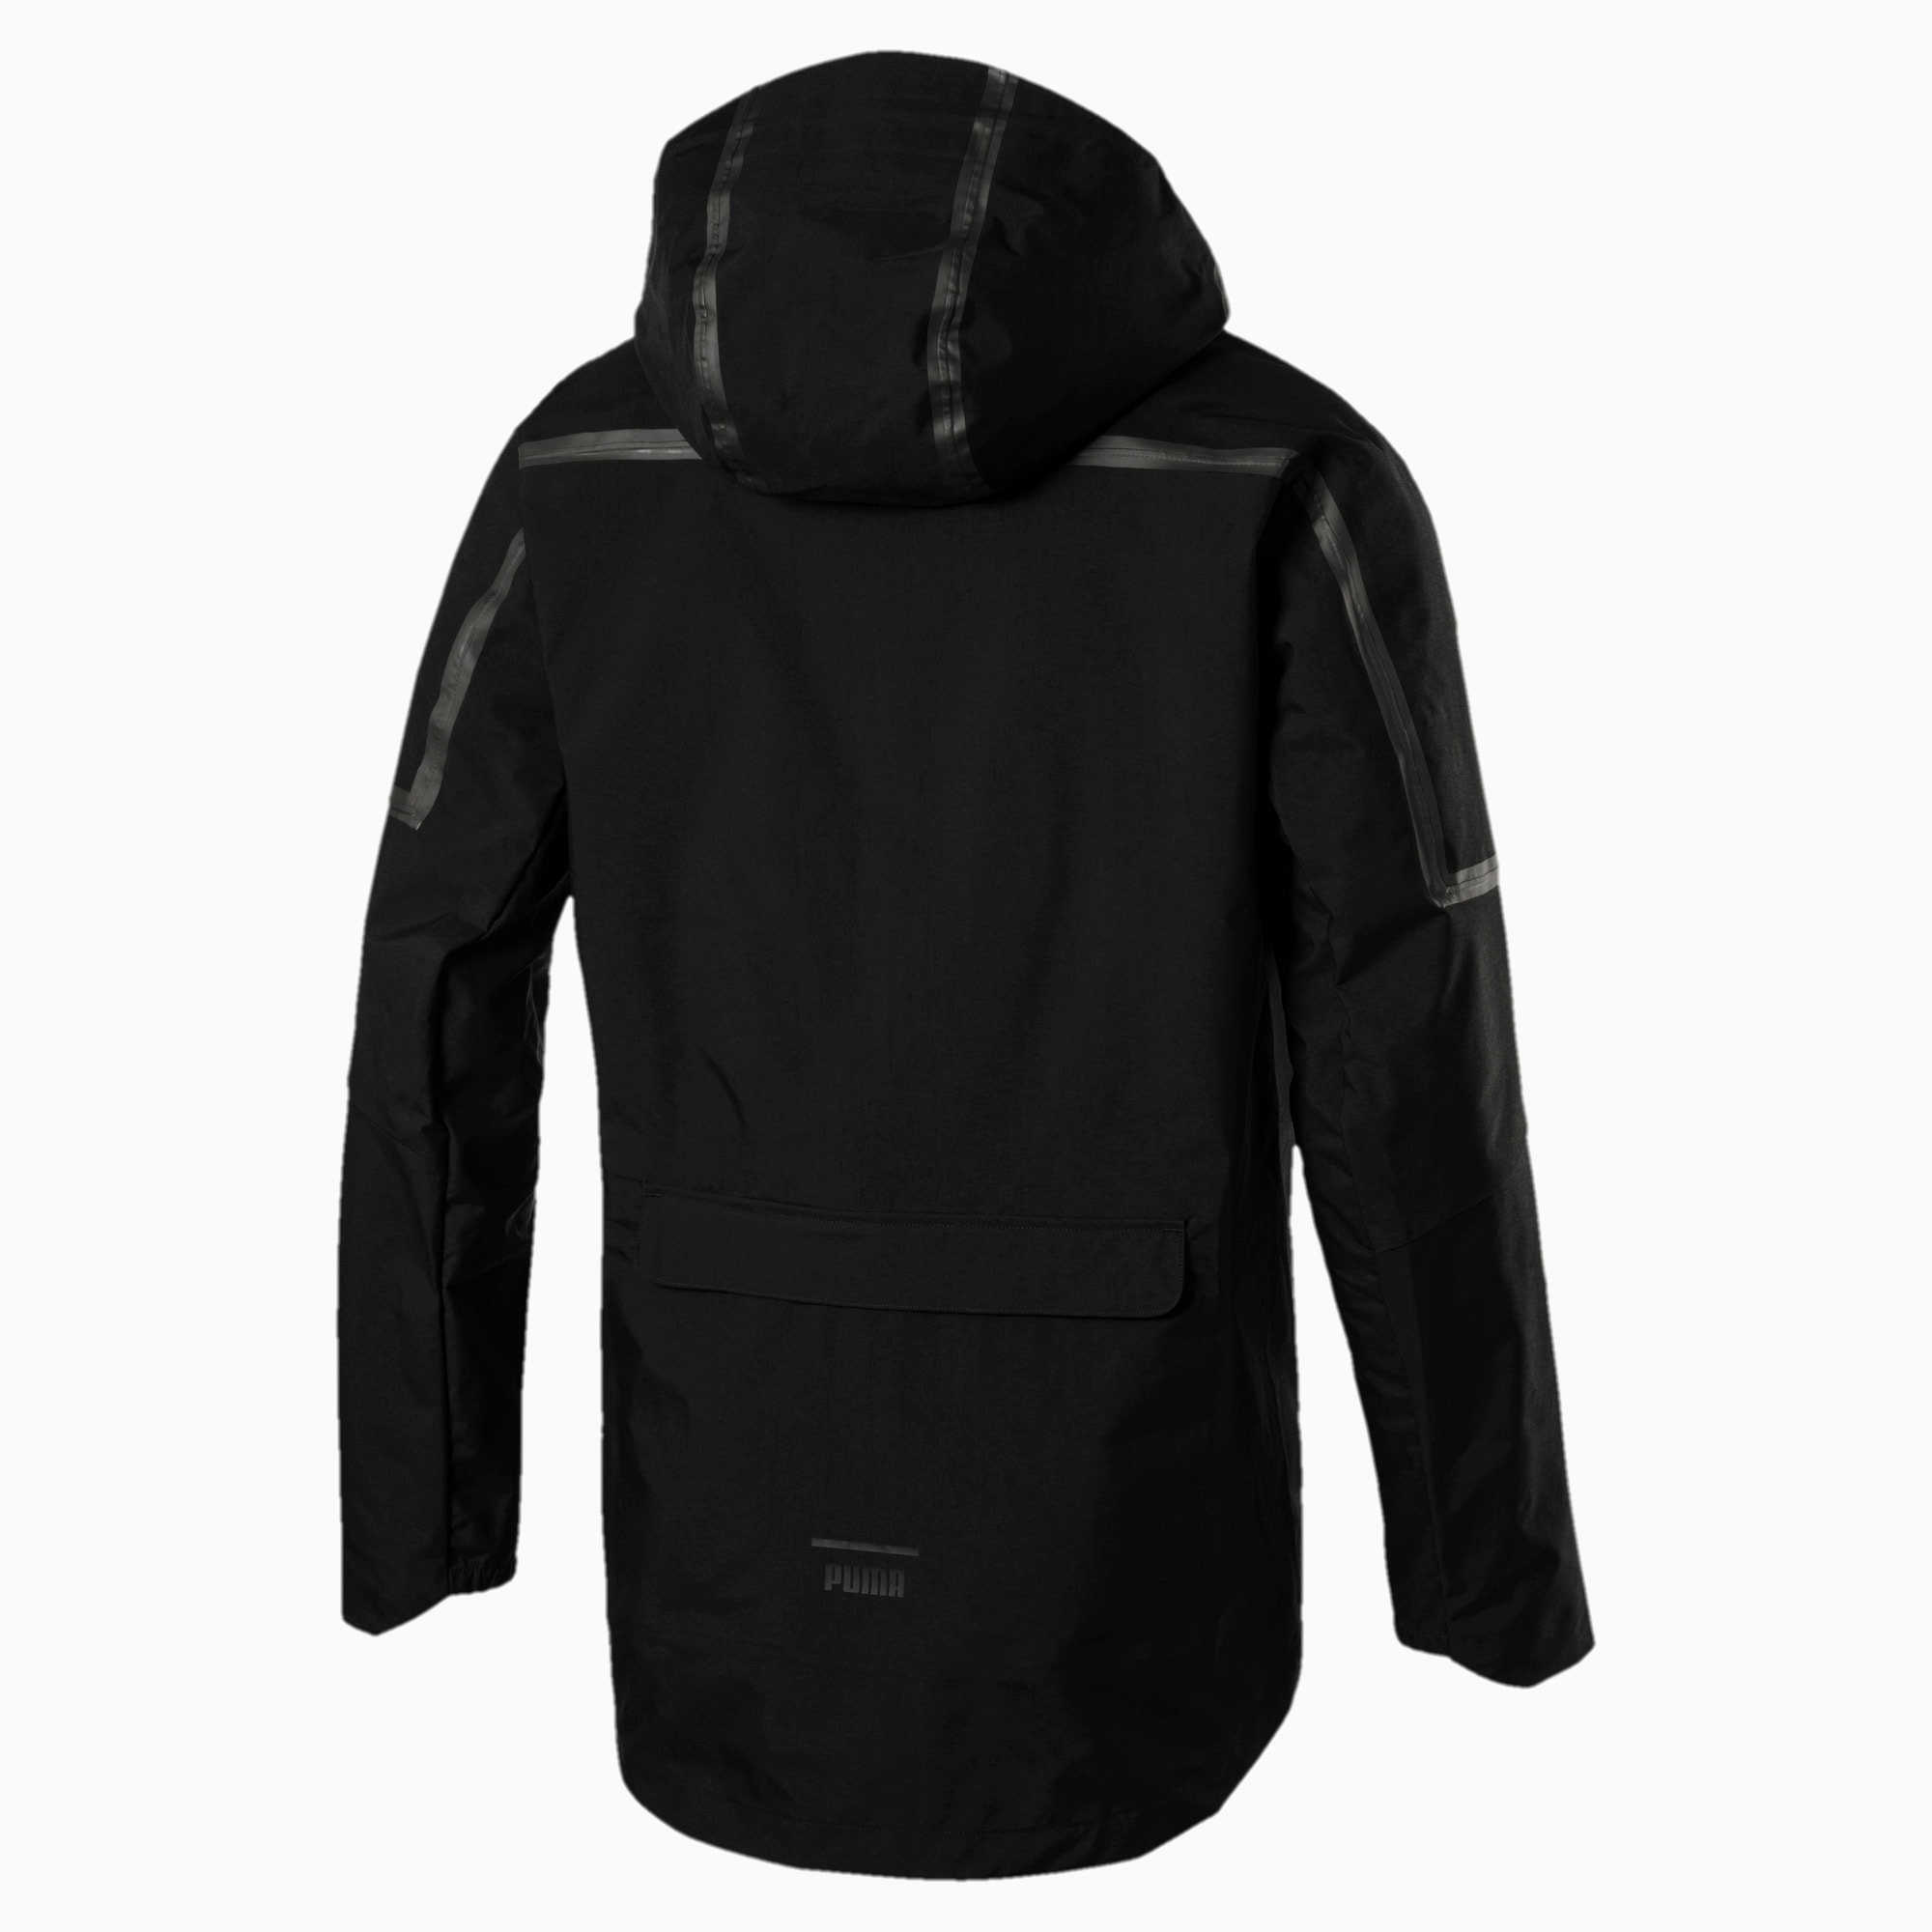 puma pace concept jacket